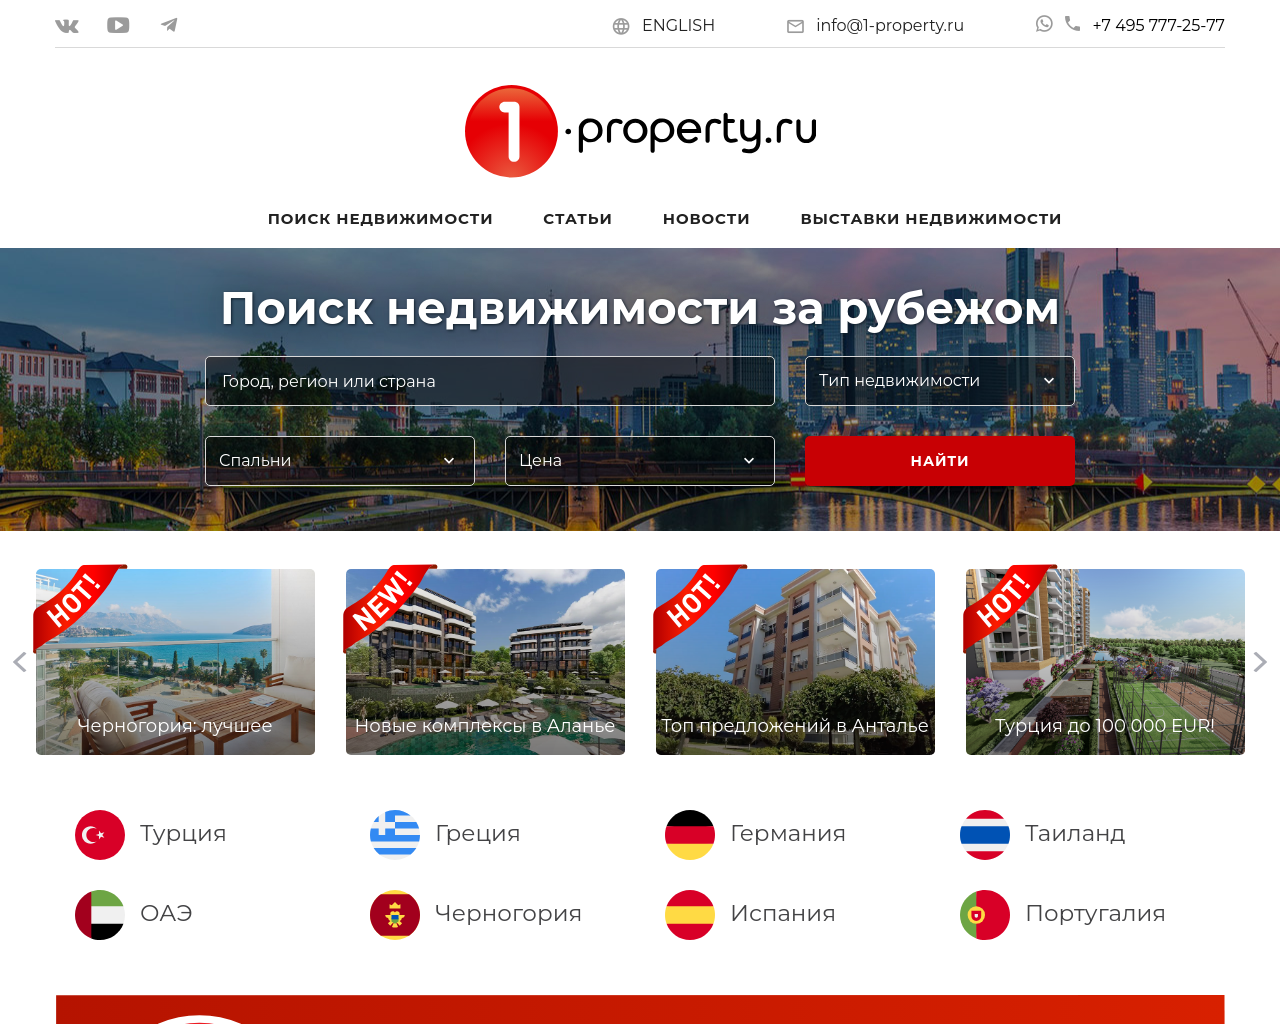 1-property.ru